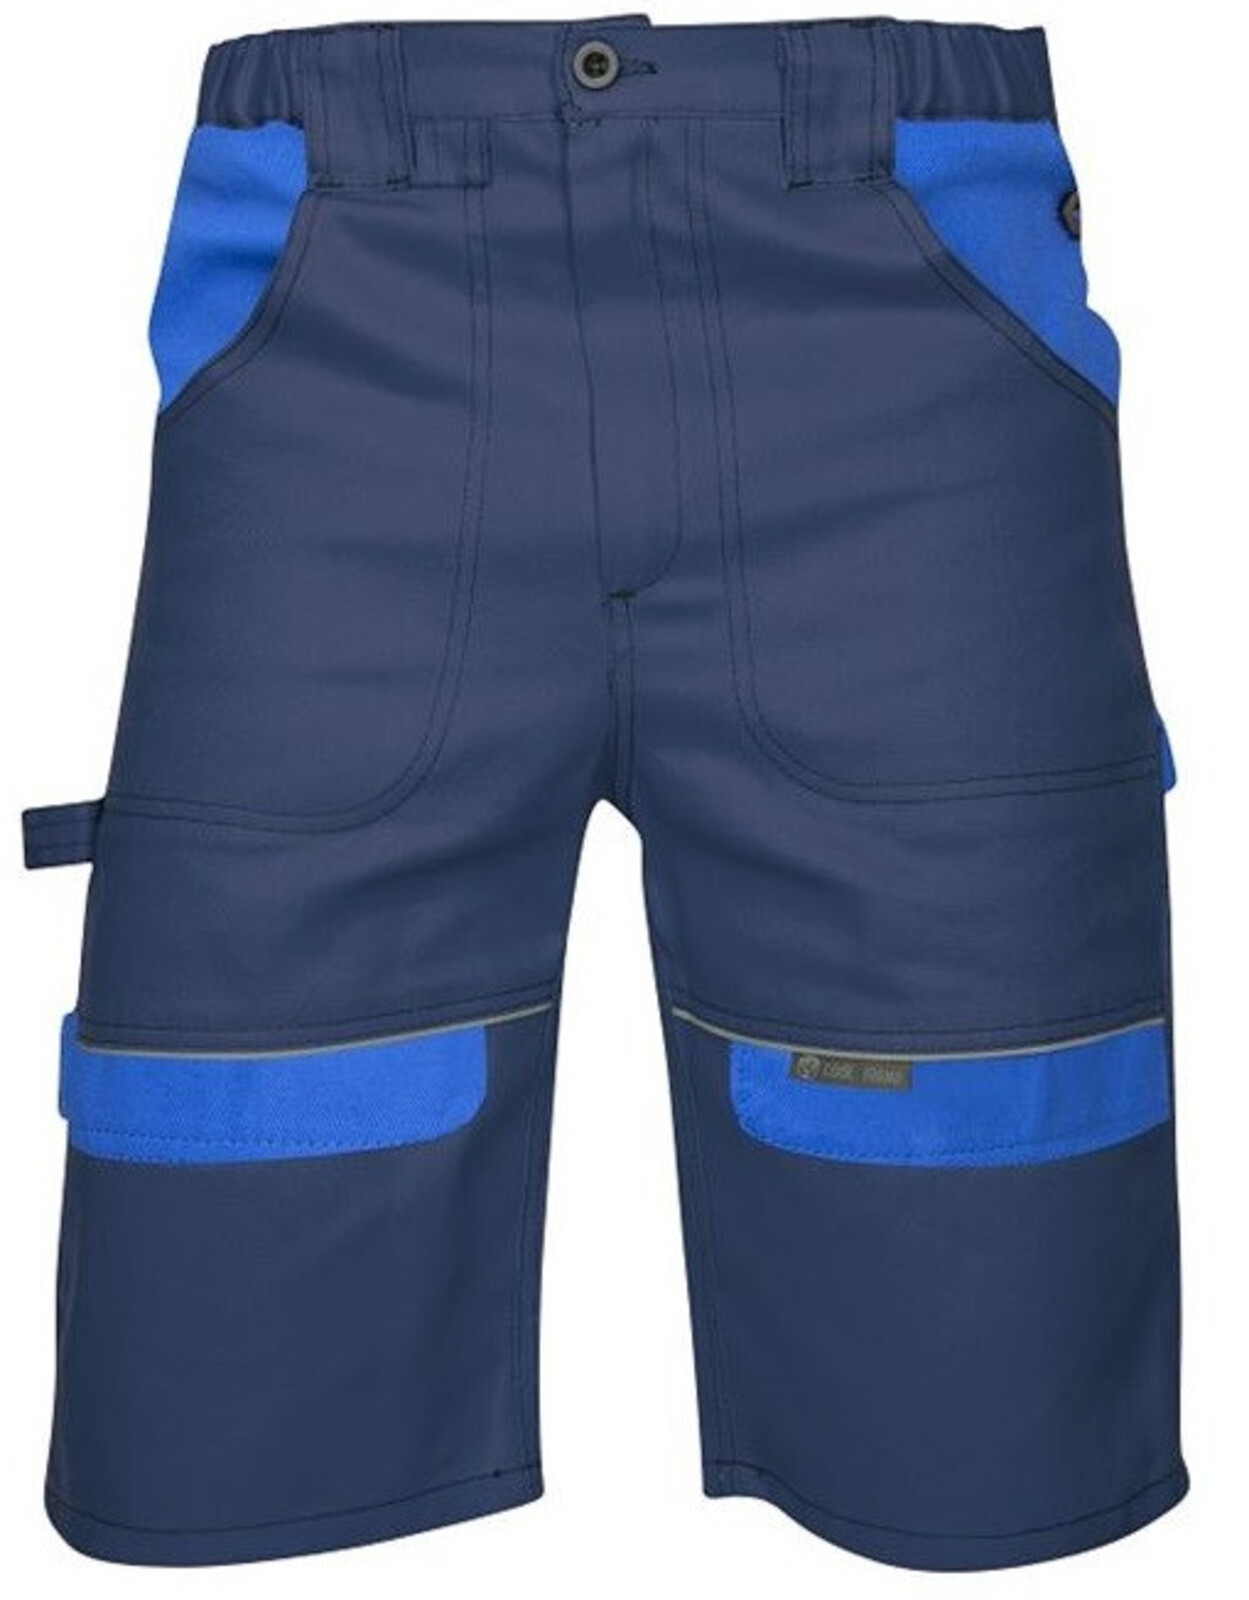 Pánske montérkové šortky Ardon Cool Trend - veľkosť: 46, farba: tmavomodrá/svetlomodrá